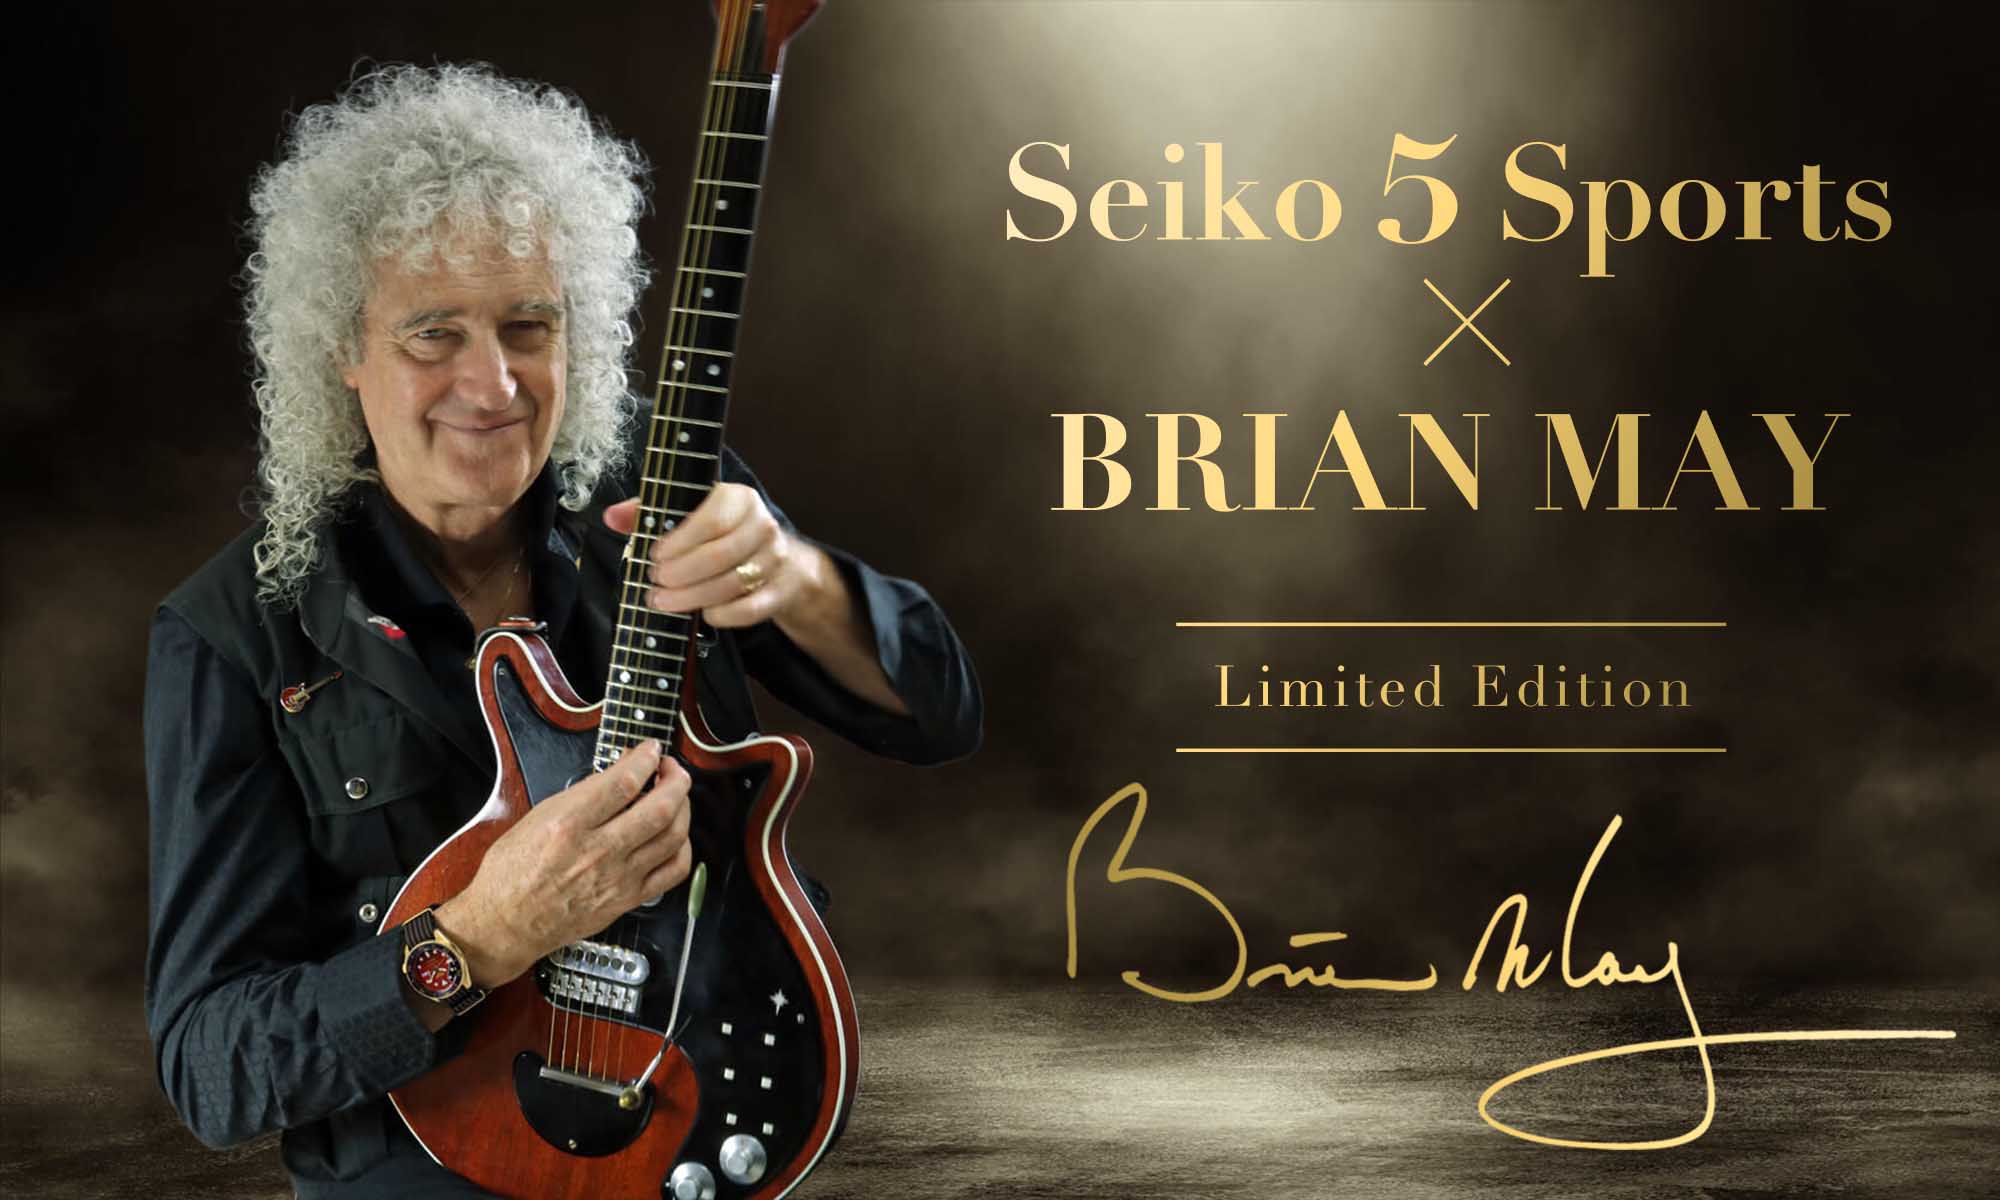 Seiko Brian May limited editions